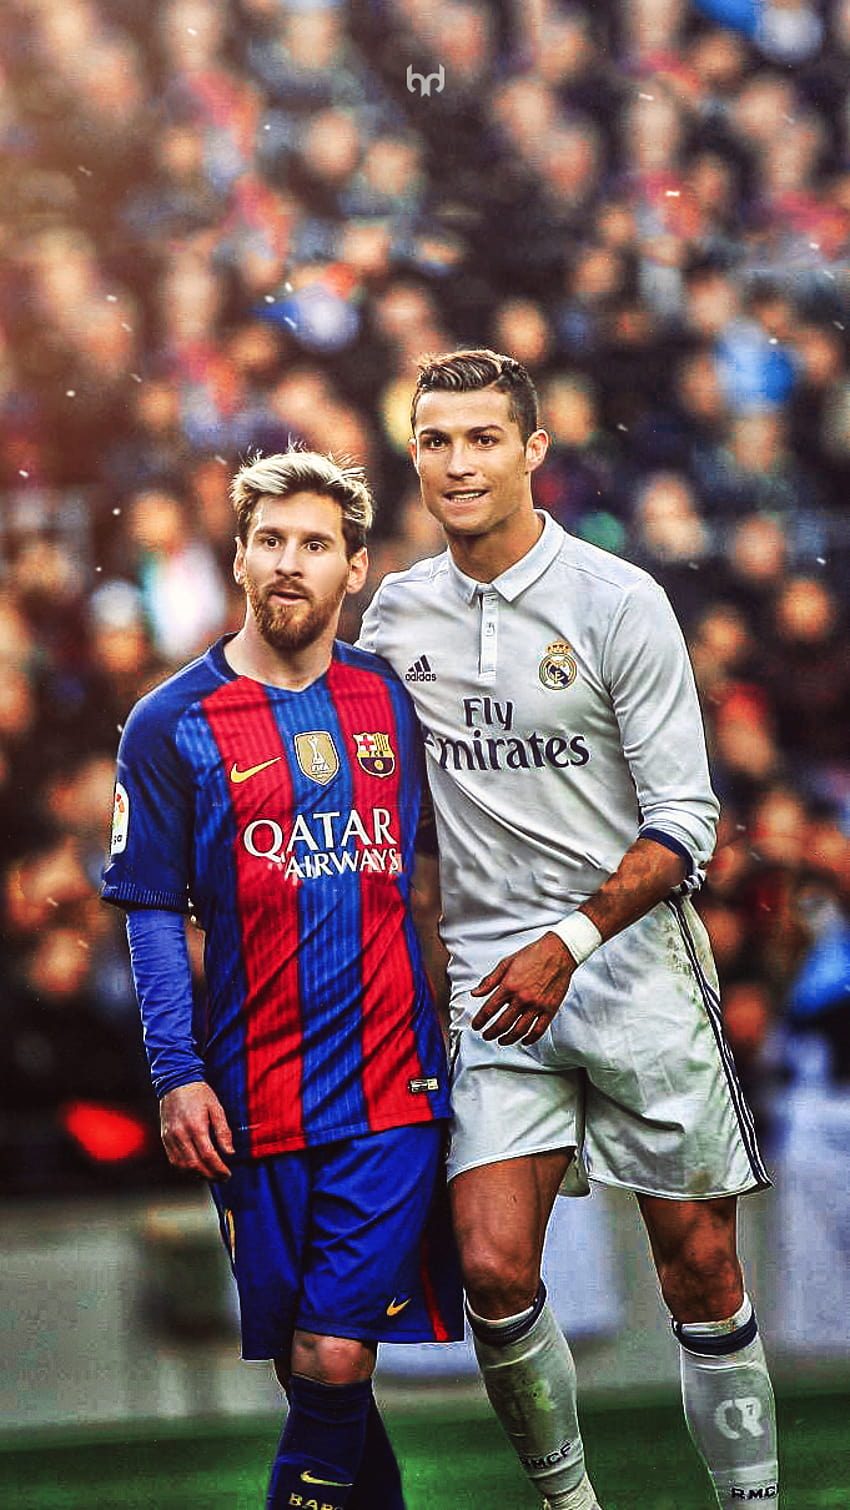 Hình nền Ronaldo và Messi iPhone sẽ đưa bạn vào thế giới của hai siêu sao bóng đá này, đầy sức hút và kịch tính. Thiết kế hiện đại và chất lượng hình ảnh tuyệt vời sẽ khiến bạn không thể nào rời mắt khỏi chiếc điện thoại của mình.